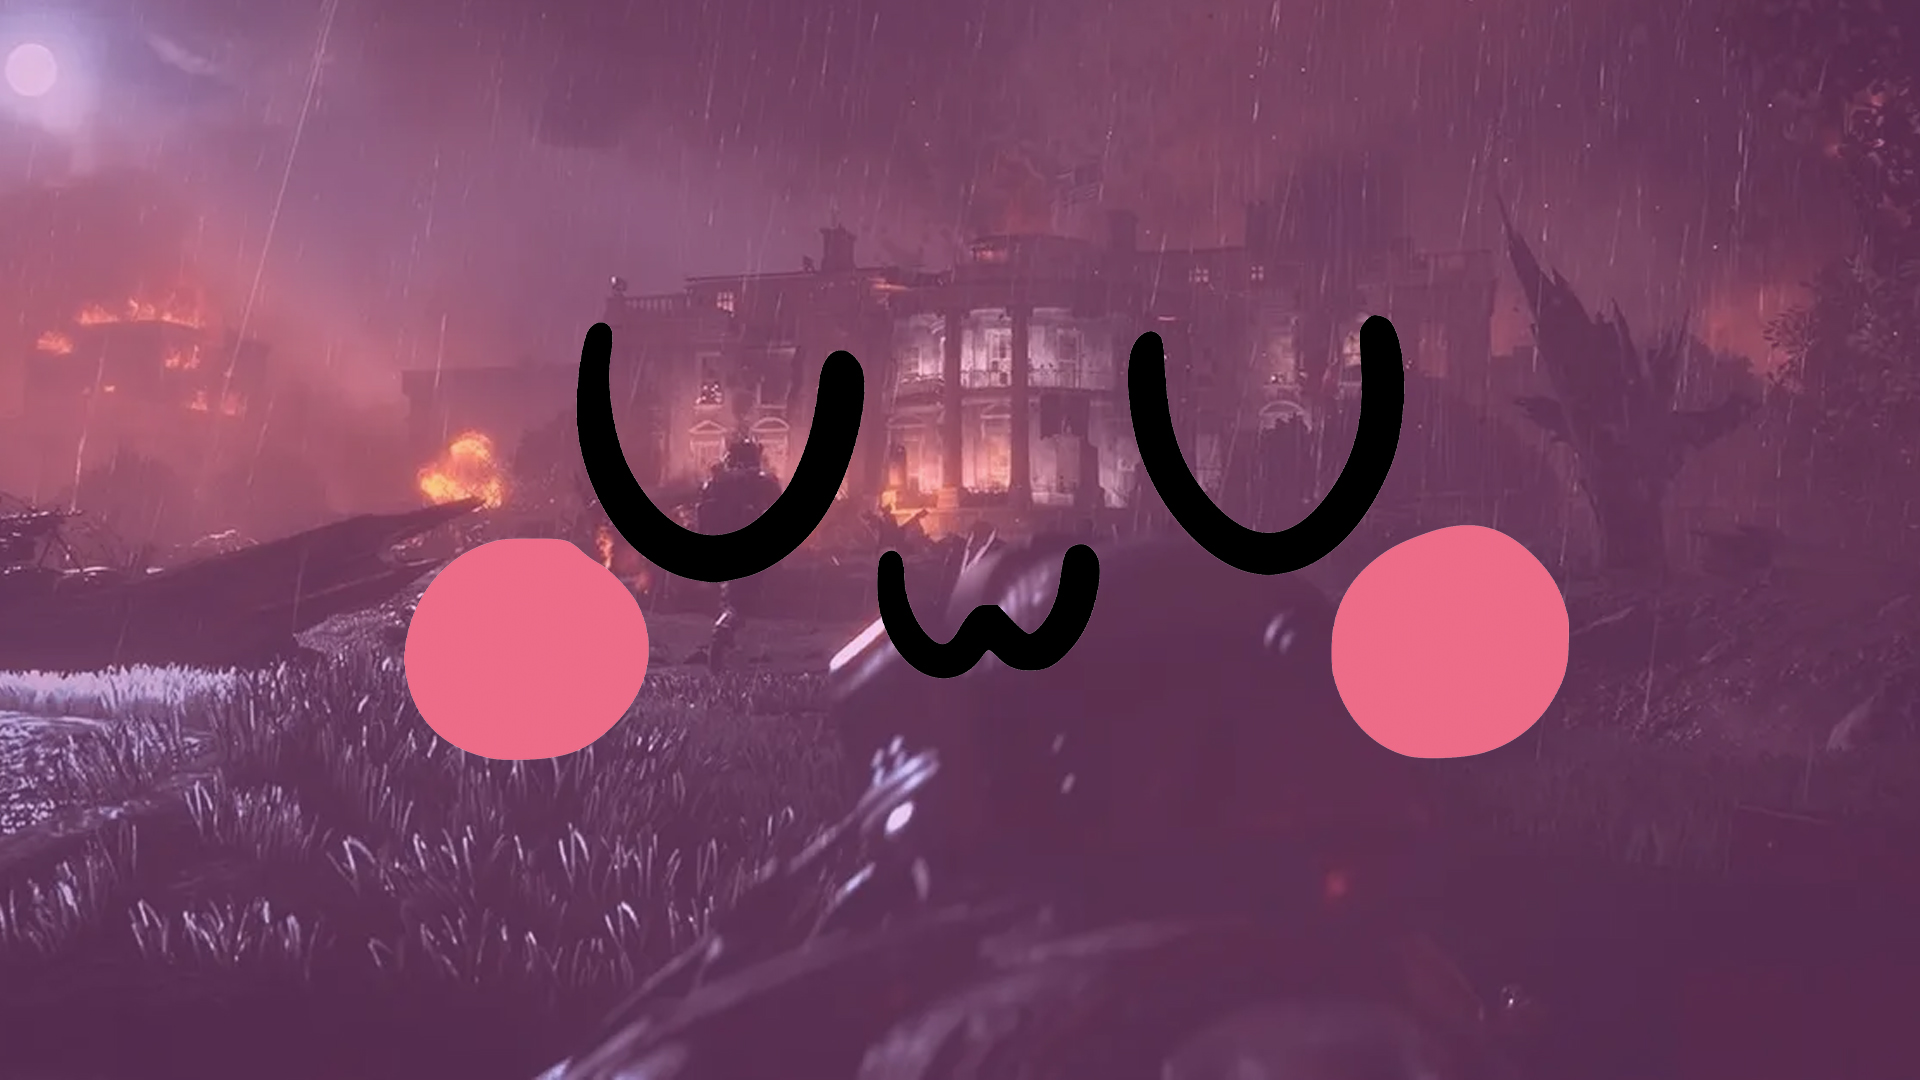 Les joueurs de MW2 découvrent un easter egg « UwU » sur un plan d’anime